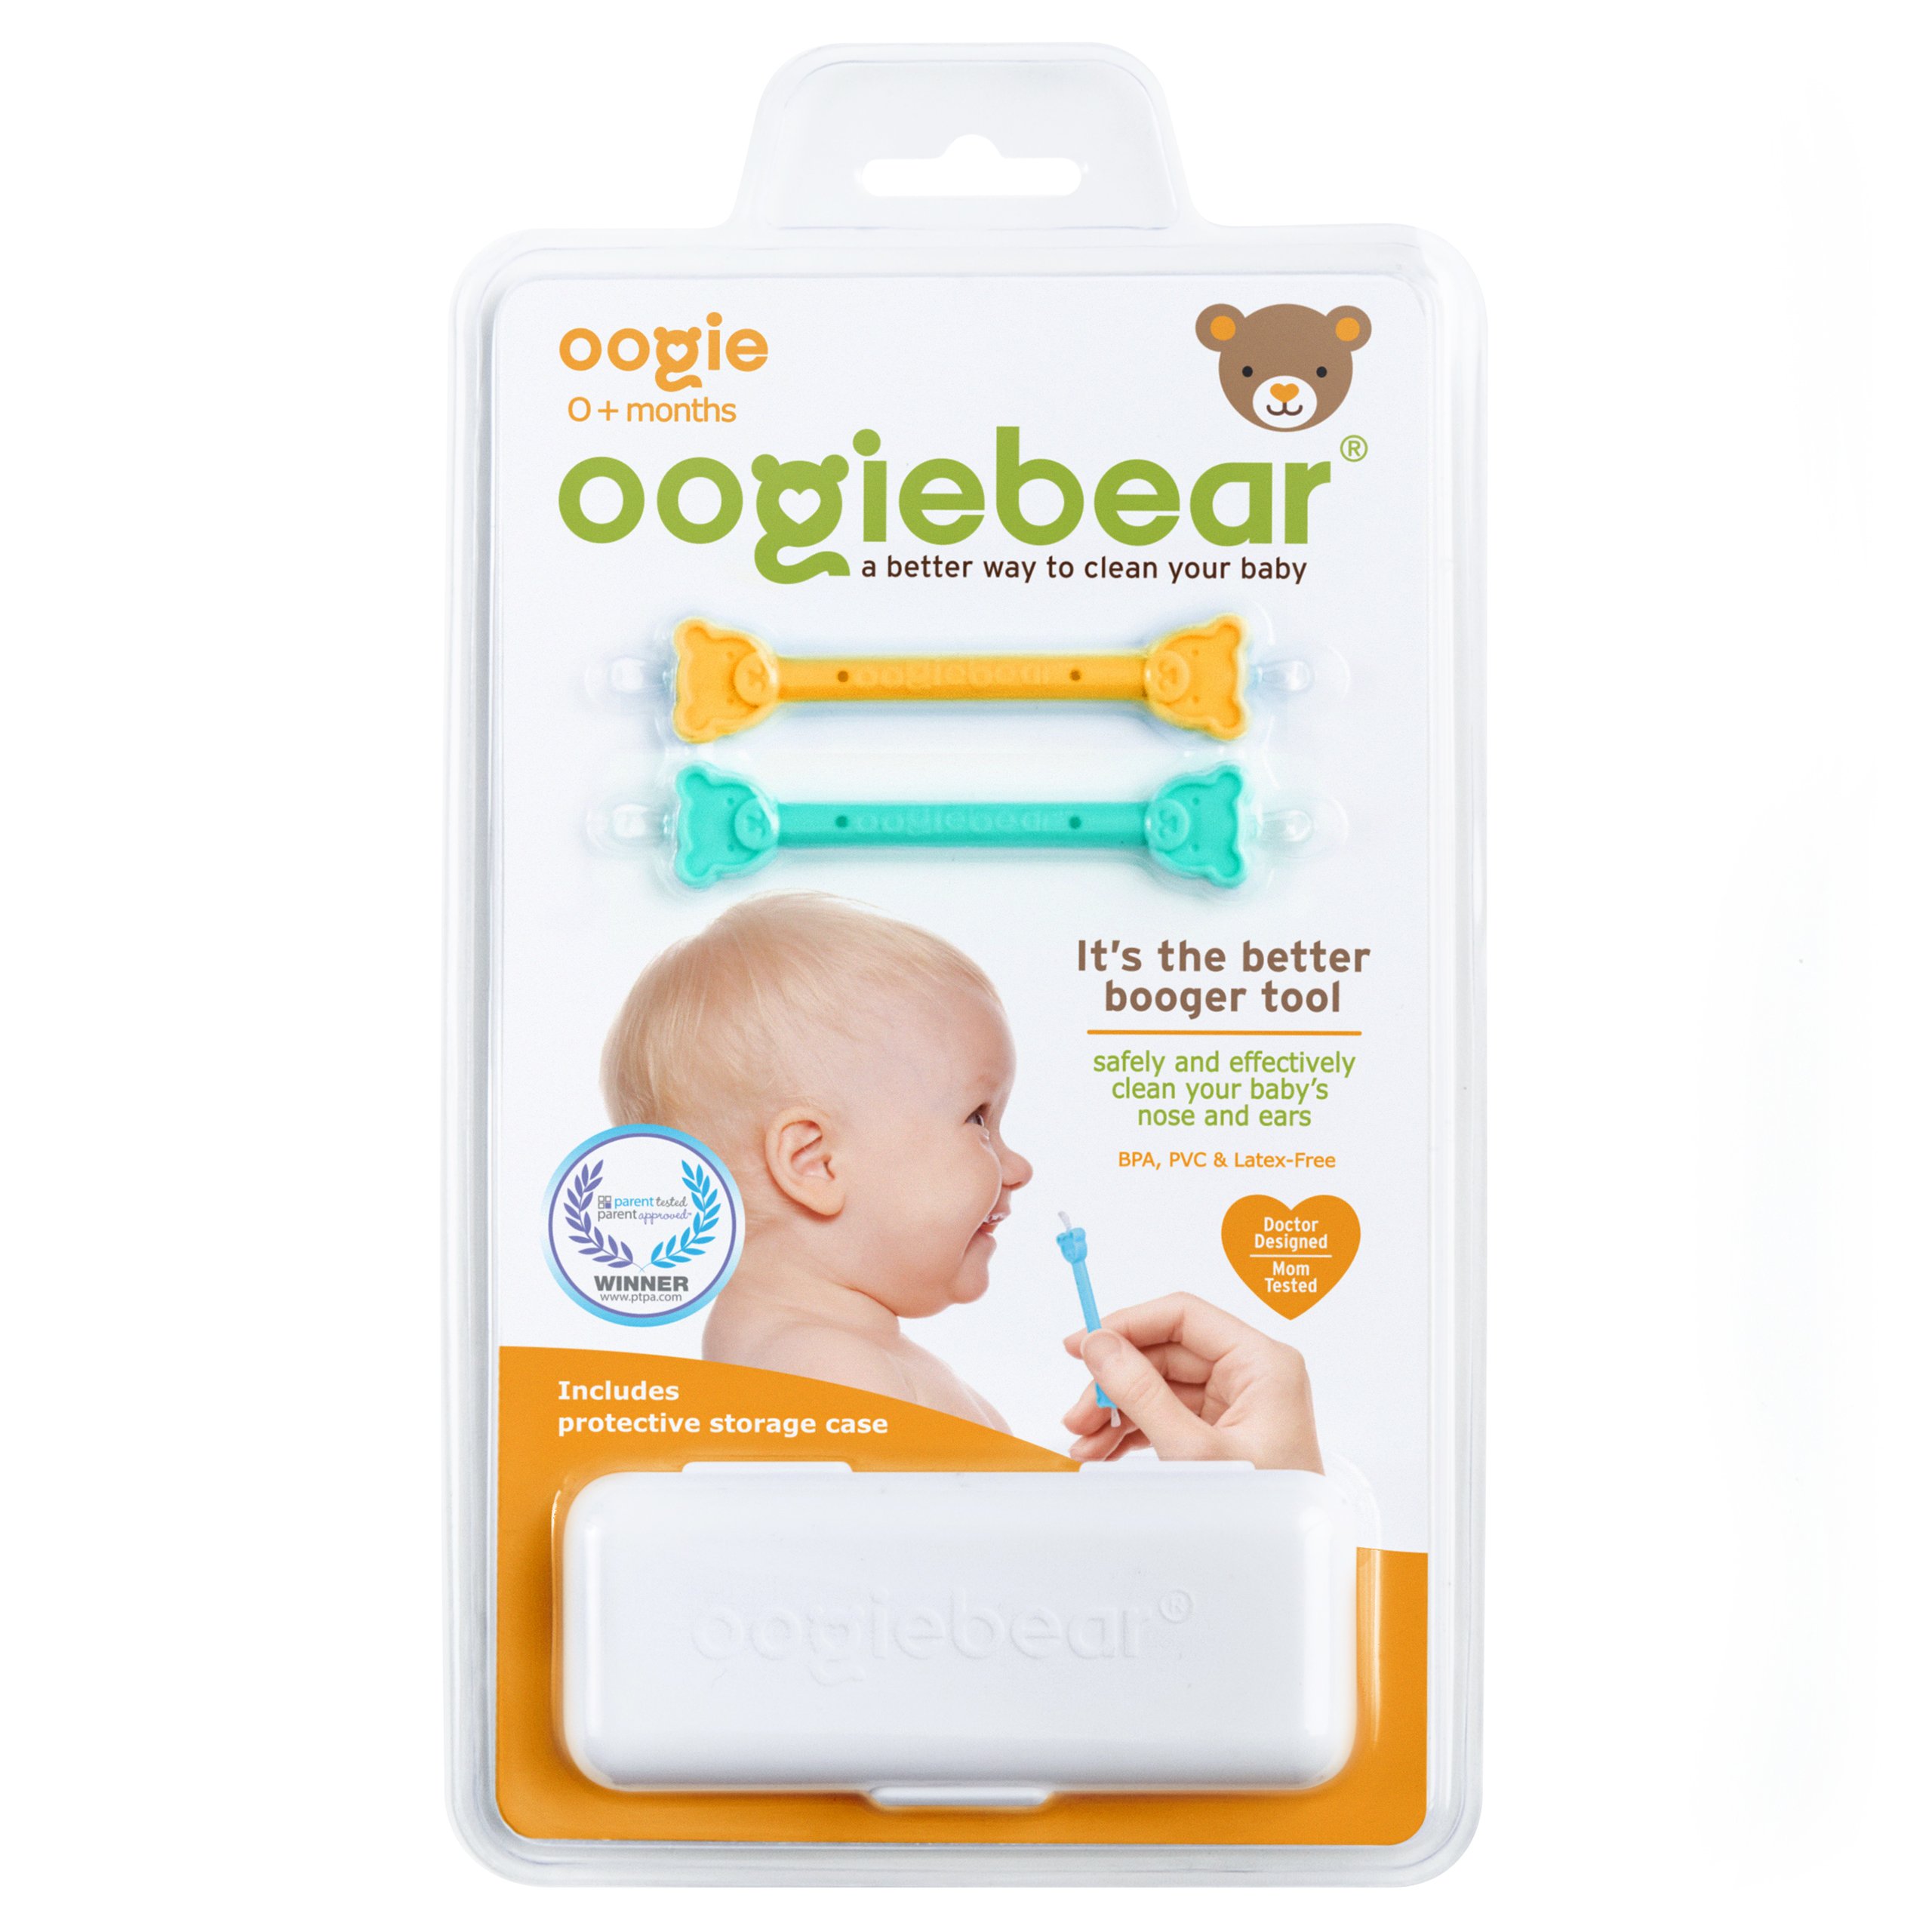 Oogiebear New Parent Gift Box